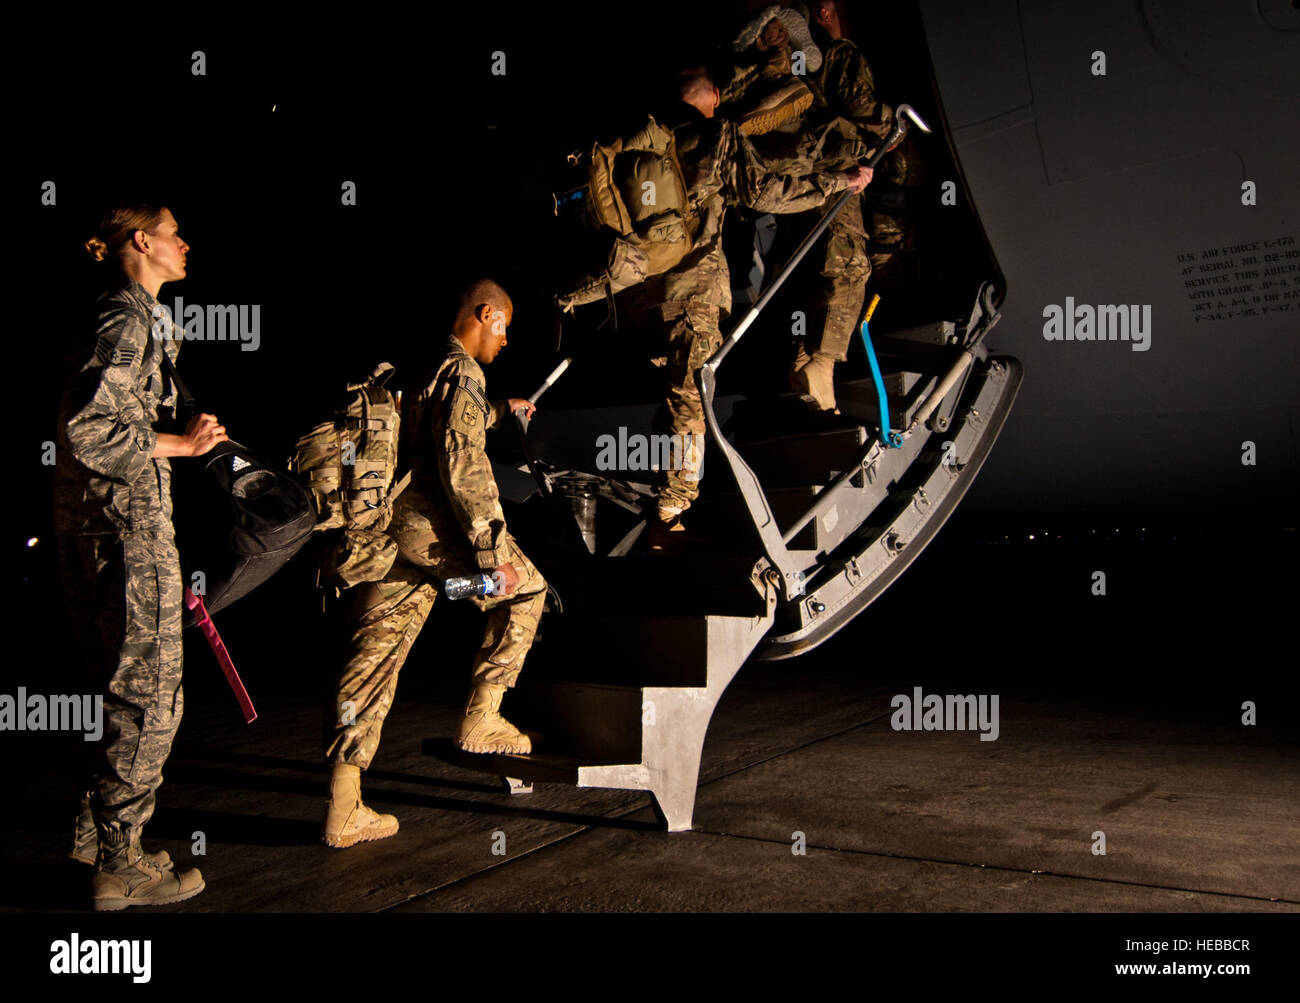 Les membres du service américain montez à bord d'une U.S. Air Force C-17 Globemaster III, à l'air de Bagram, en Afghanistan, le 6 juin 2012, après avoir terminé leur période de service. Les soldats sont rentrés chez eux avec l'aide de stations les aviateurs du 455 e Escadron expéditionnaire de Port de l'antenne. Banque D'Images